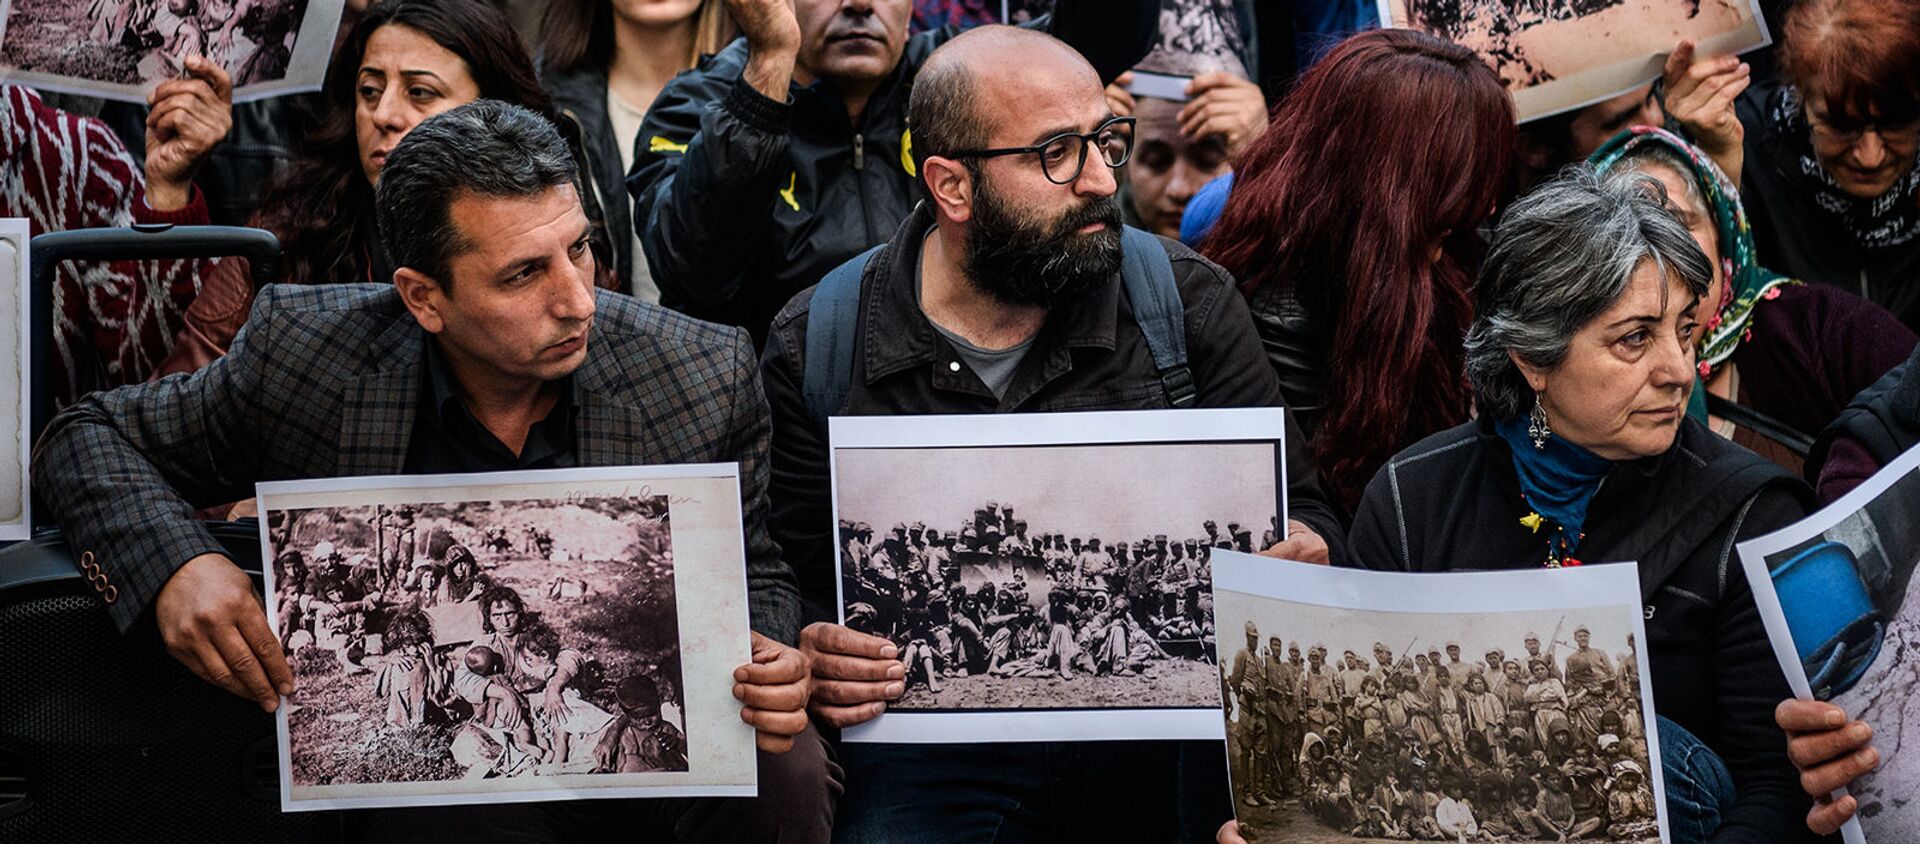 Протестующие вспоминают о Дерсимской резне, происходяшее в период 1936 - 1939гг (5 апреля 2016). Стамбул - Sputnik Армения, 1920, 29.04.2019